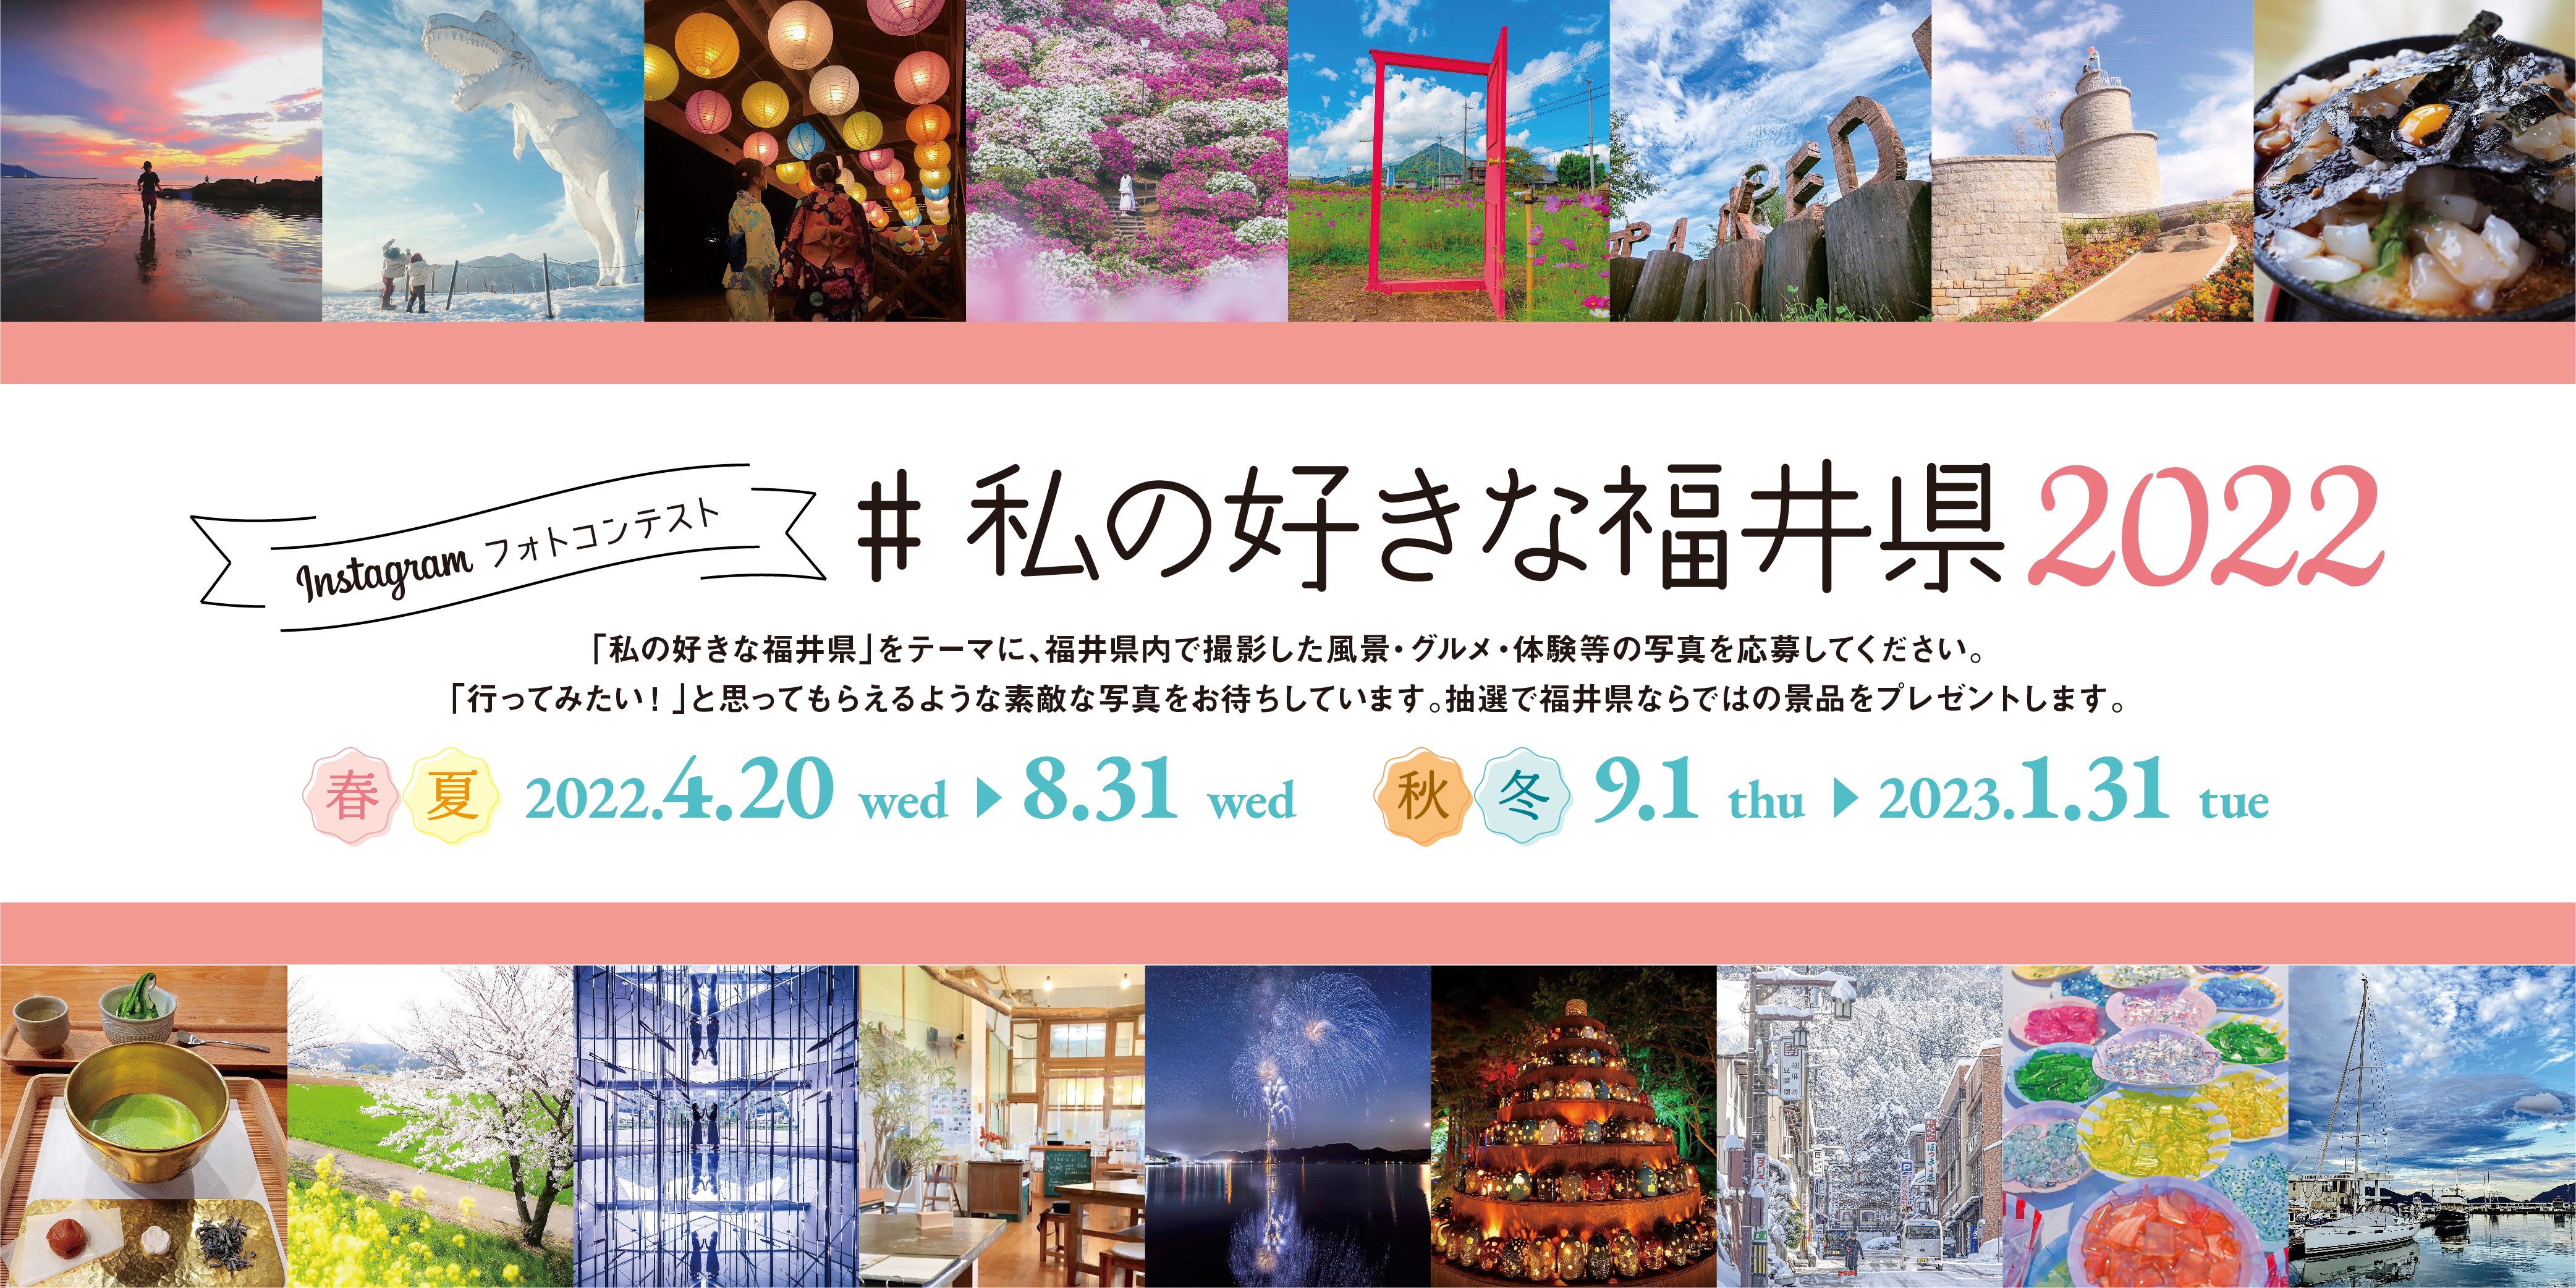 Instagramフォトコンテスト第5弾「＃私の好きな福井県2022」が開催！ 福井県が大好きな皆様からのご投稿をお待ちしています。また、インスタ映えスポットづくりに取り組む団体を募集します！